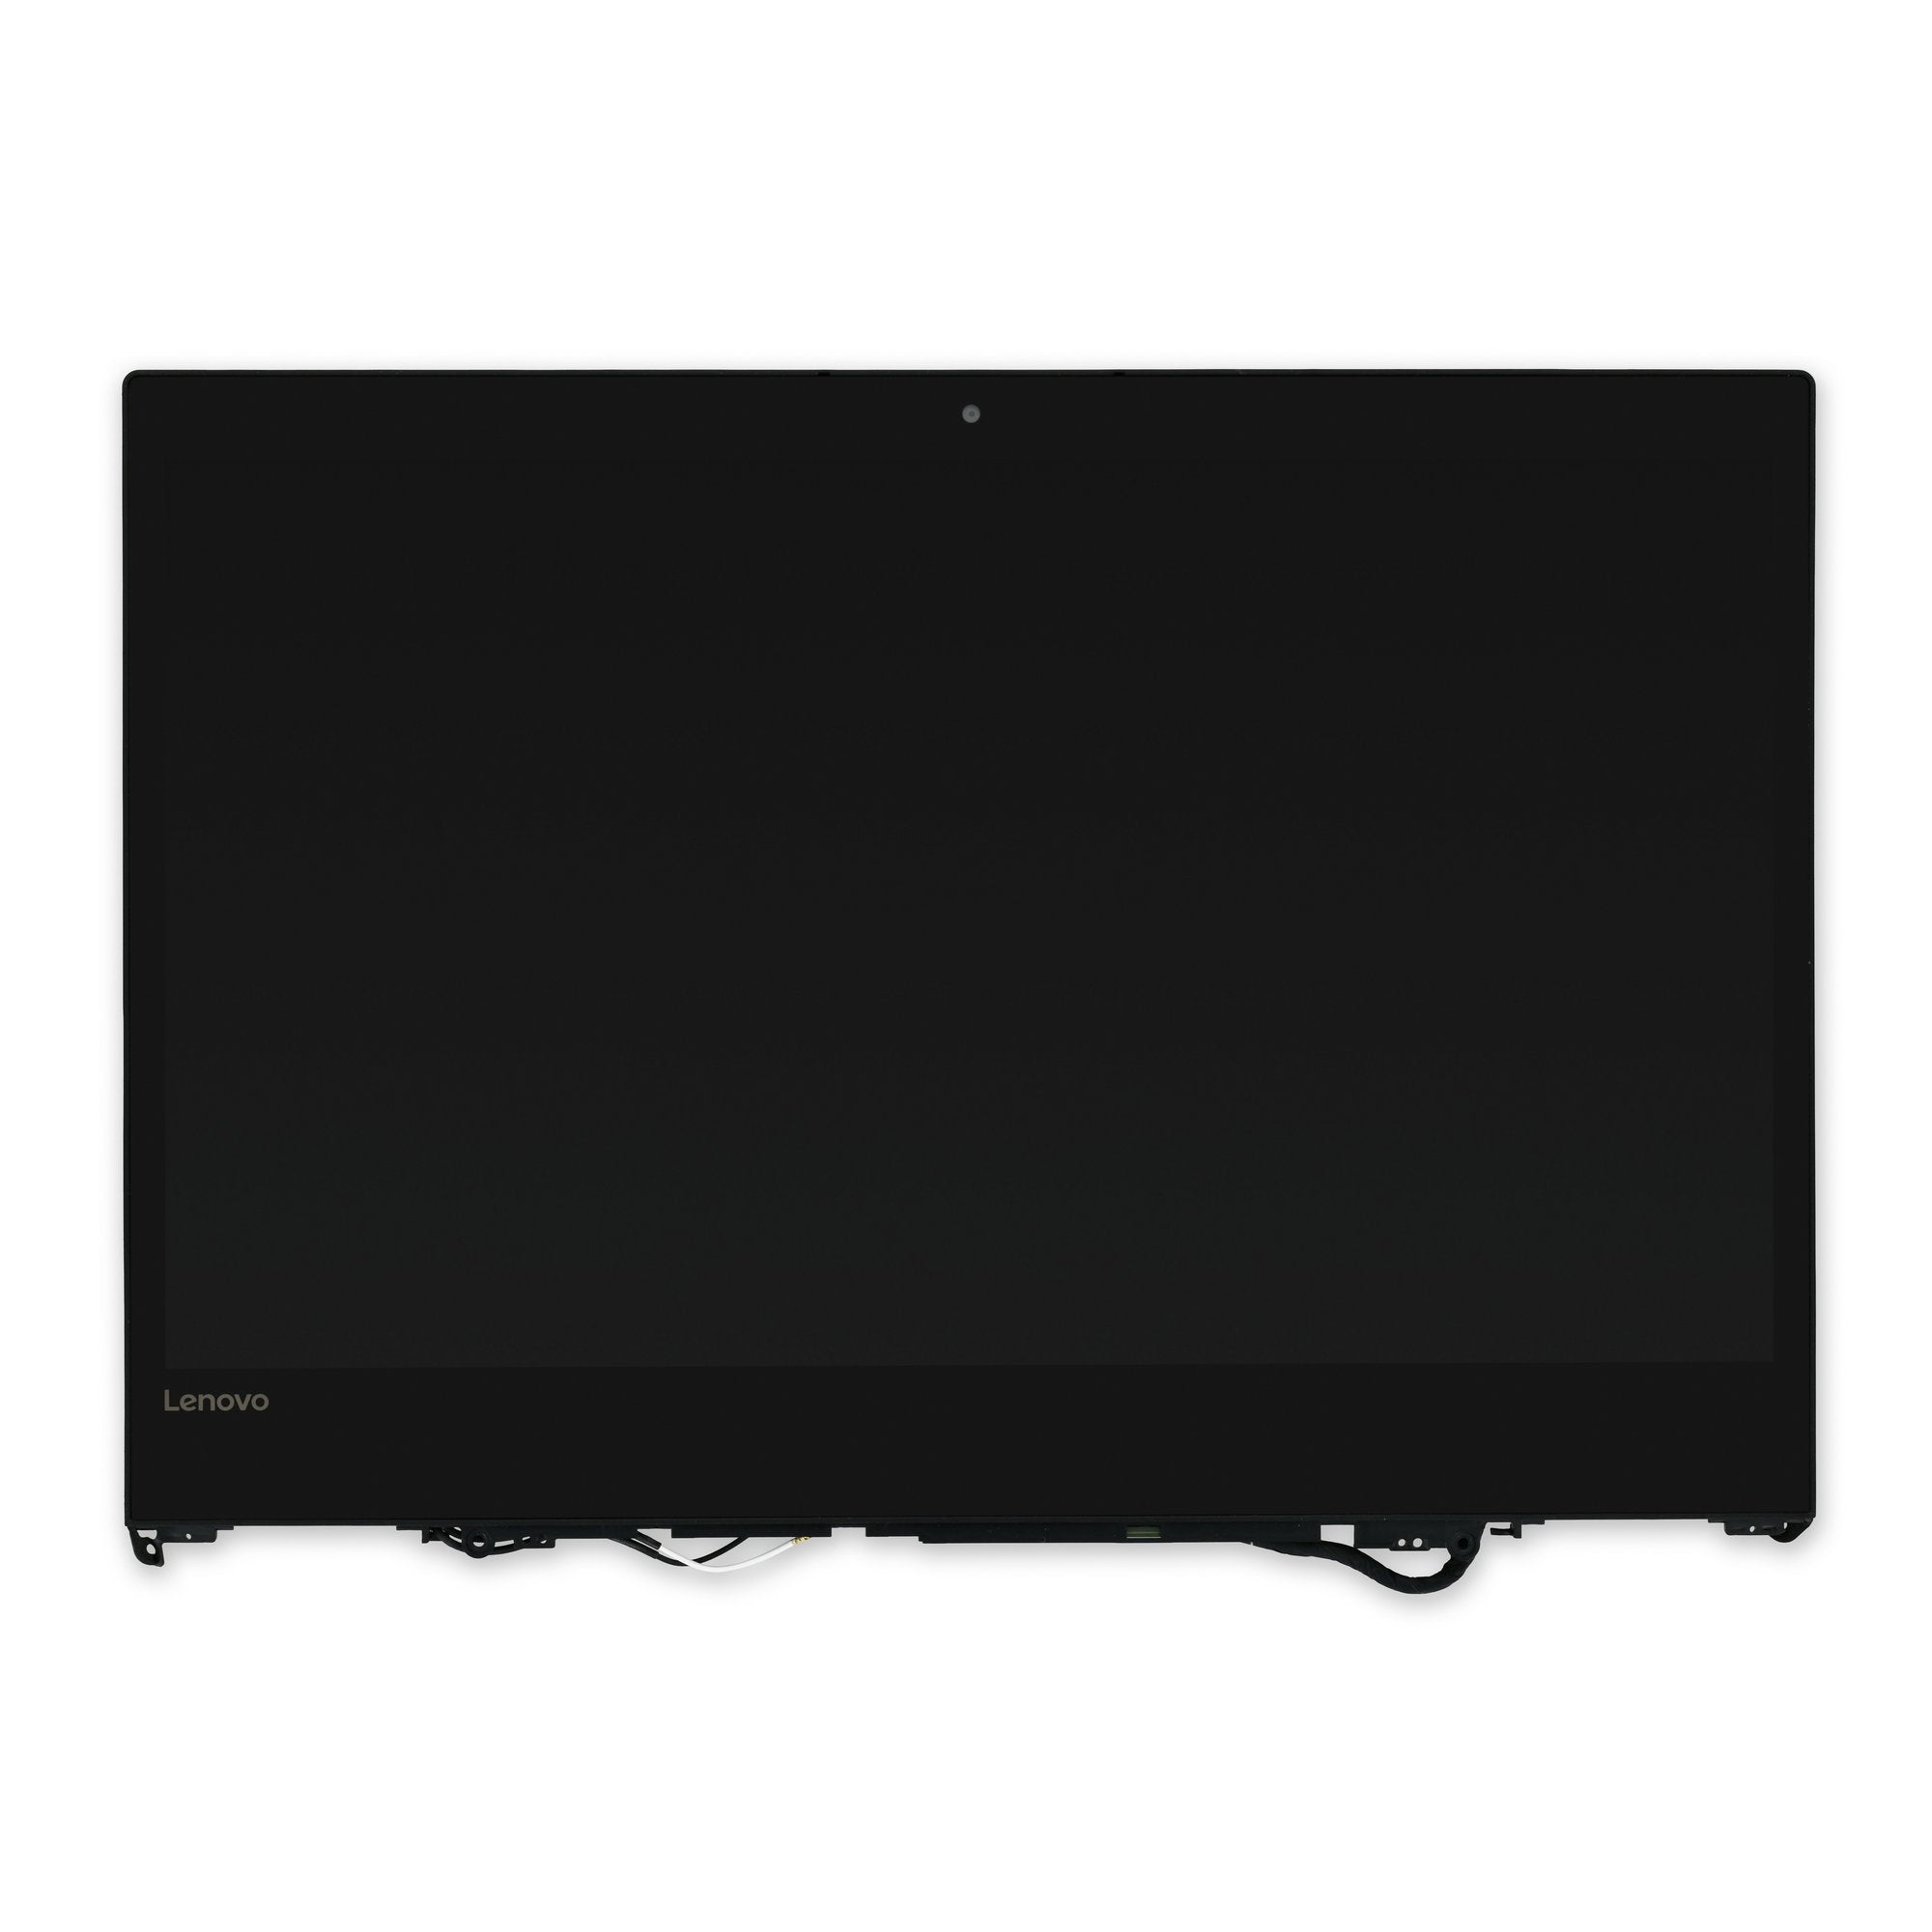 Lenovo Yoga 520 (14") and Flex 5-1470 HD LCD Panel Used